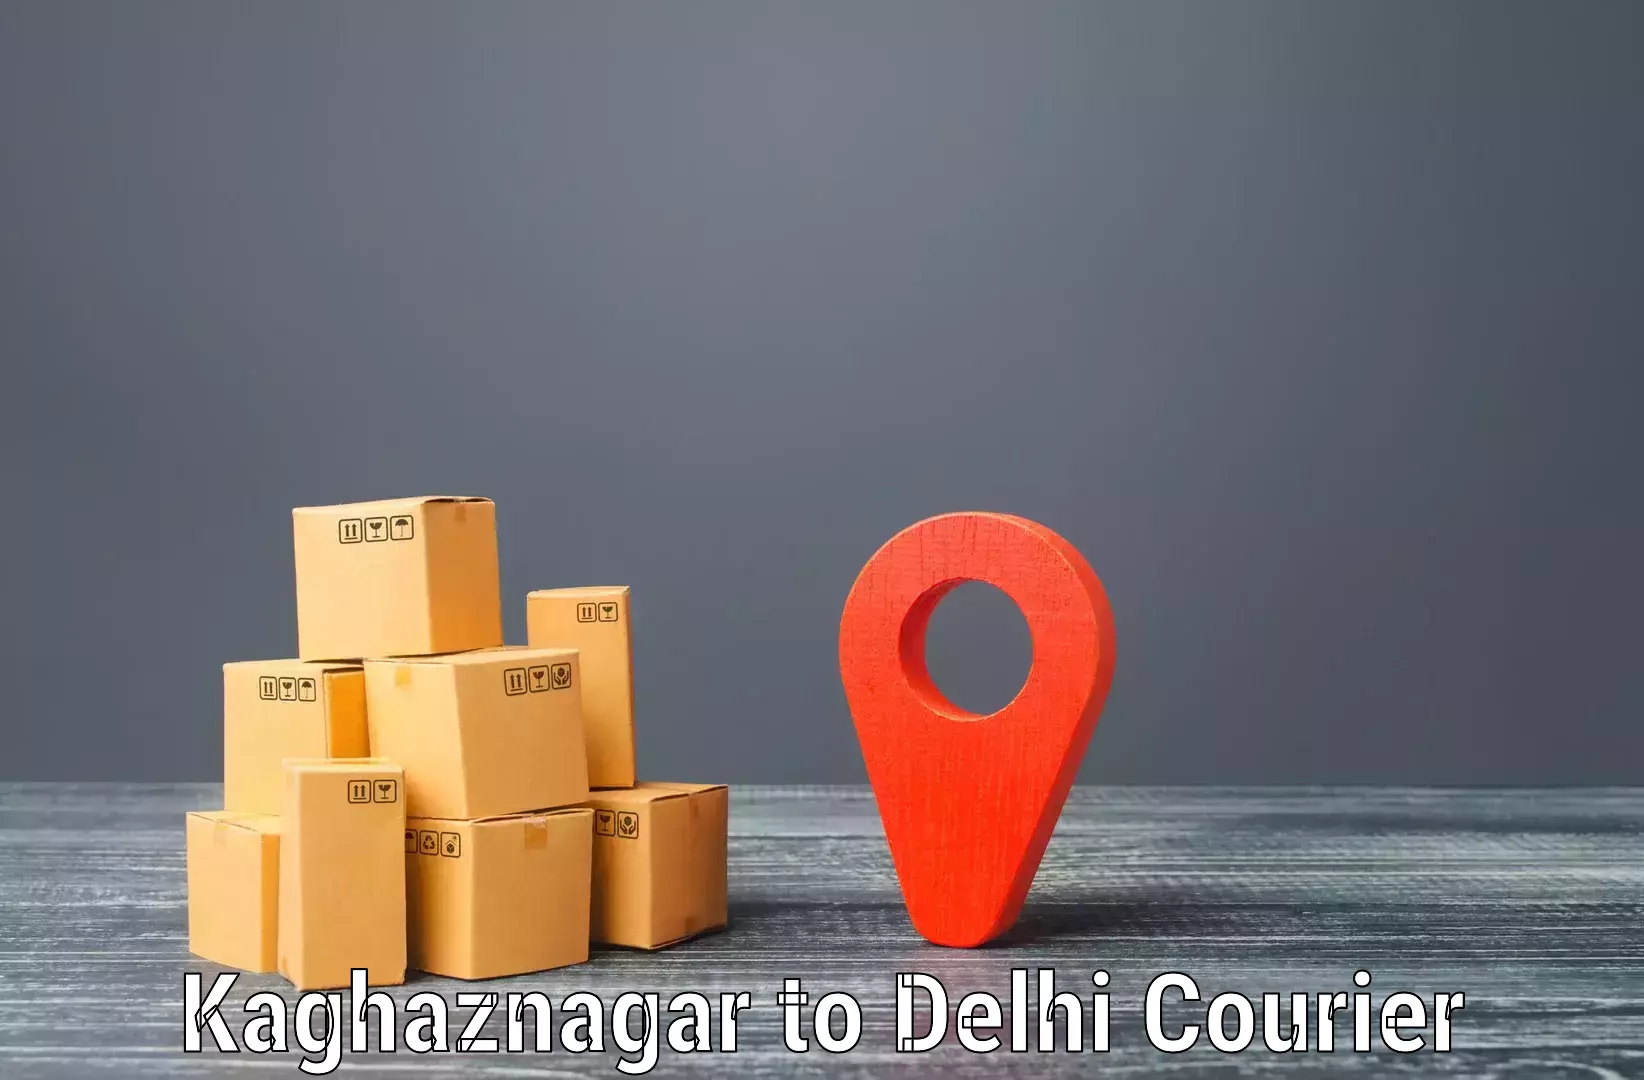 Efficient freight service Kaghaznagar to Ramesh Nagar